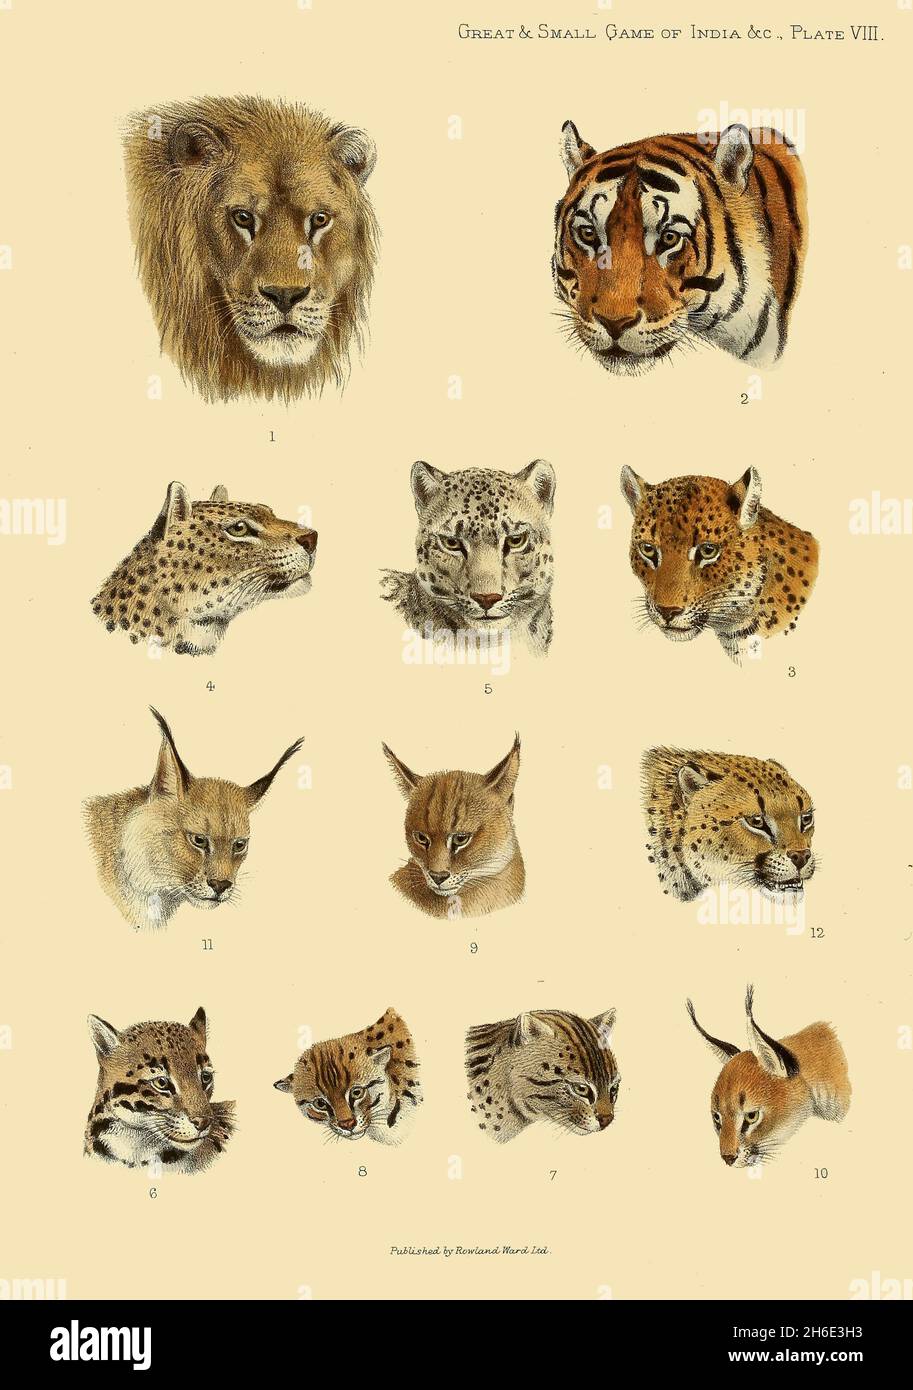 TÔLE 8 1.Lion indien, 2.Tigre du Bengale, 3.Léopard indien, 4.Léopard perse, 5.Snow-Leopard, 6.Léopard trouble, 7.Pêche-chat, 8.Leopard-Cat, 9.Jungle-Cat, 10.Caracal, IILynx tibétaine, 12.Hunting-Leopard, du livre « The Great and Small game of India, Birma, & Tibet » de Richard Lydekker, publié à Londres par R. Ward en 1900 Banque D'Images